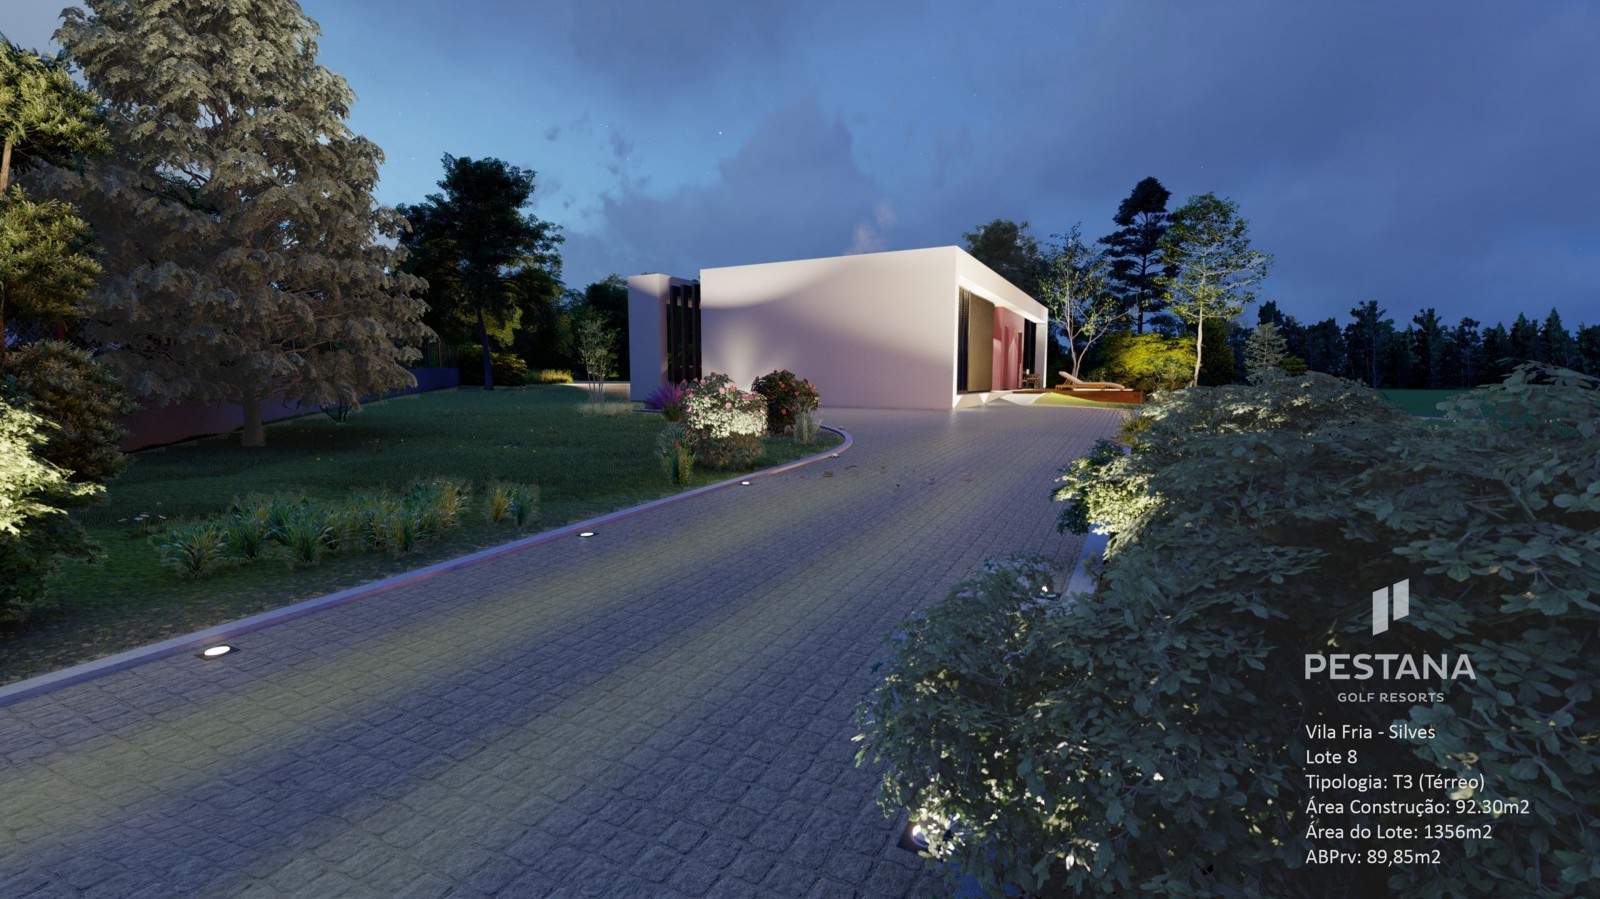 Terrain à bâtir, à vendre, à Golf Resort - Algarve_207527